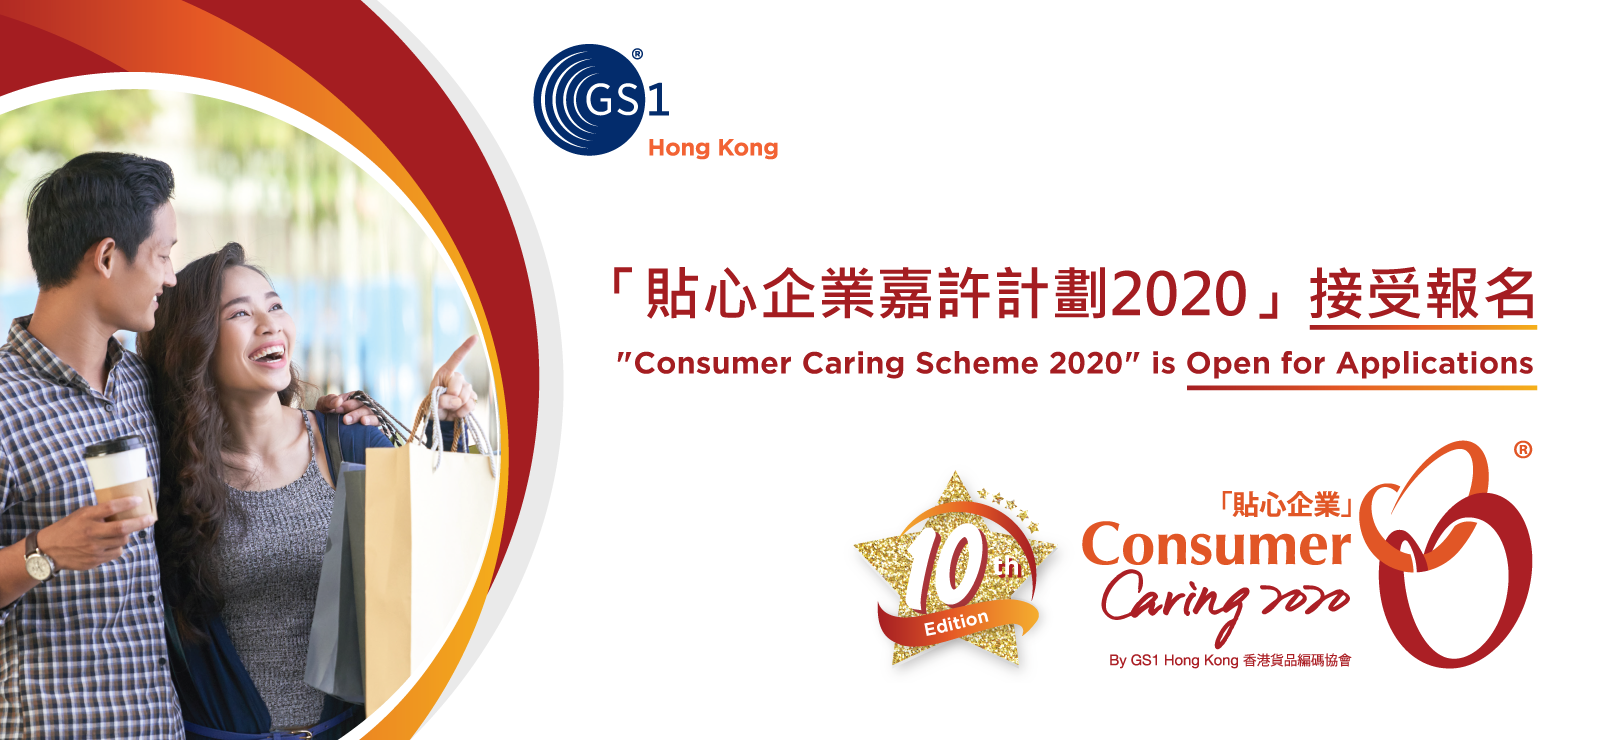 Consumer Caring Scheme 2020